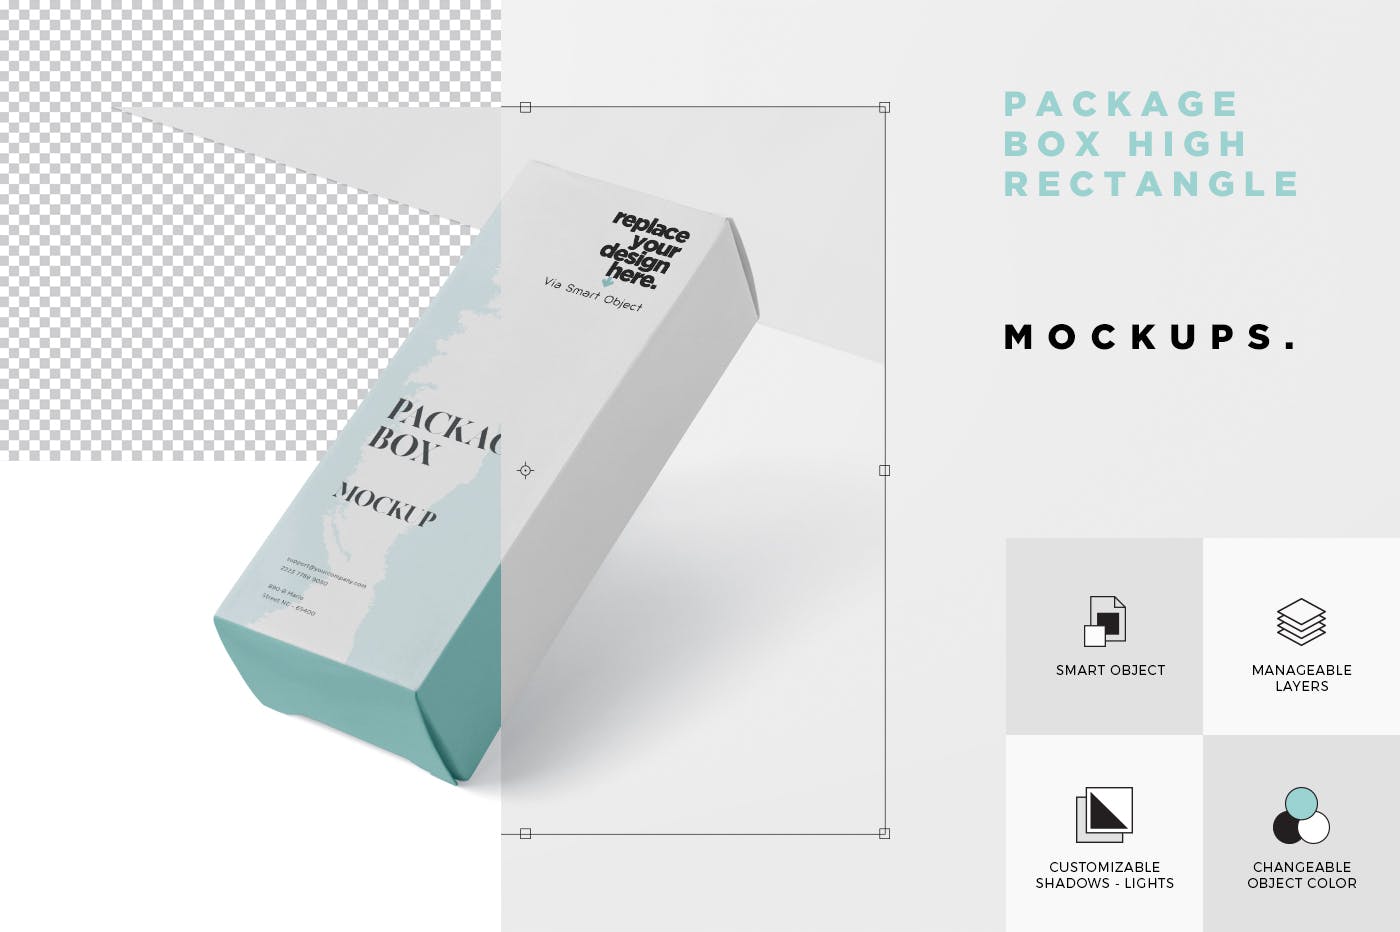 简约风多用途产品包装纸盒设计效果图非凡图库精选 Package Box Mock-Up – High Rectangle Shape插图(5)